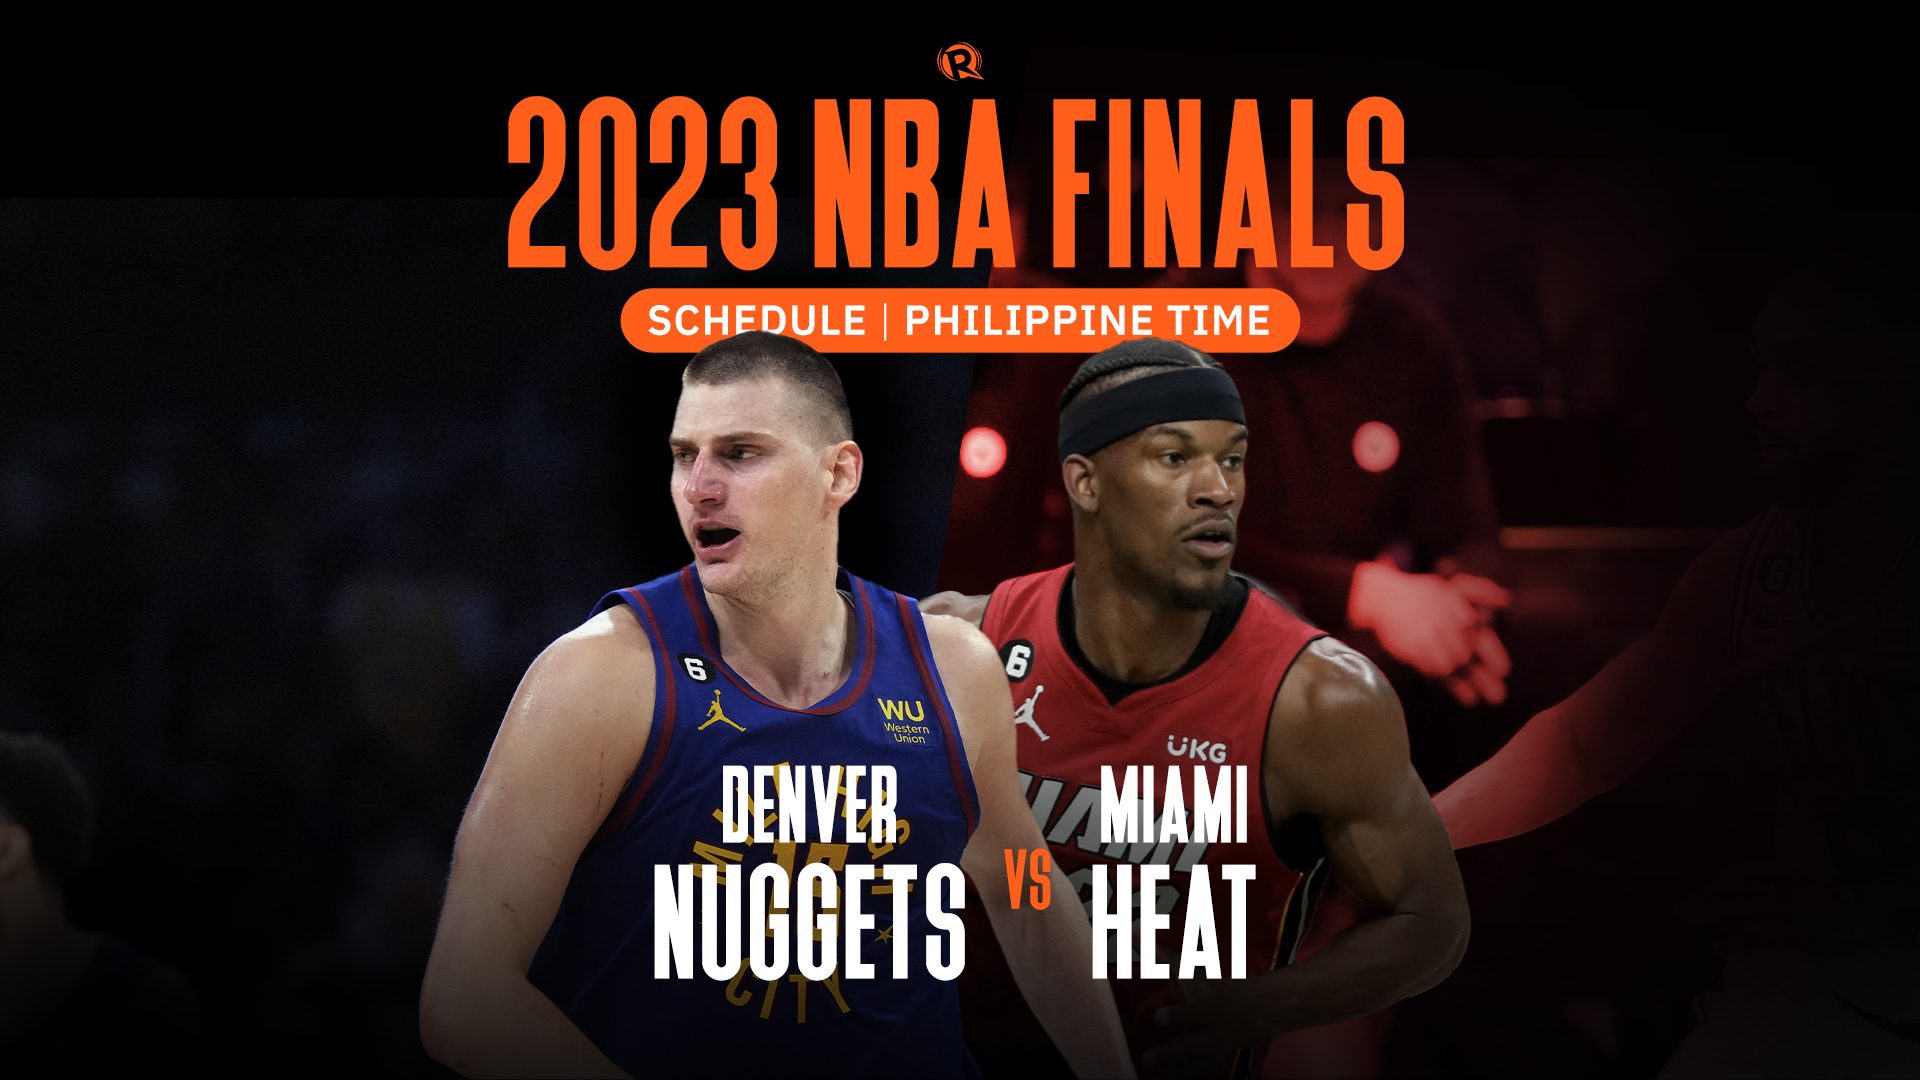 SCHEDULE 2023 NBA Finals, Philippine time